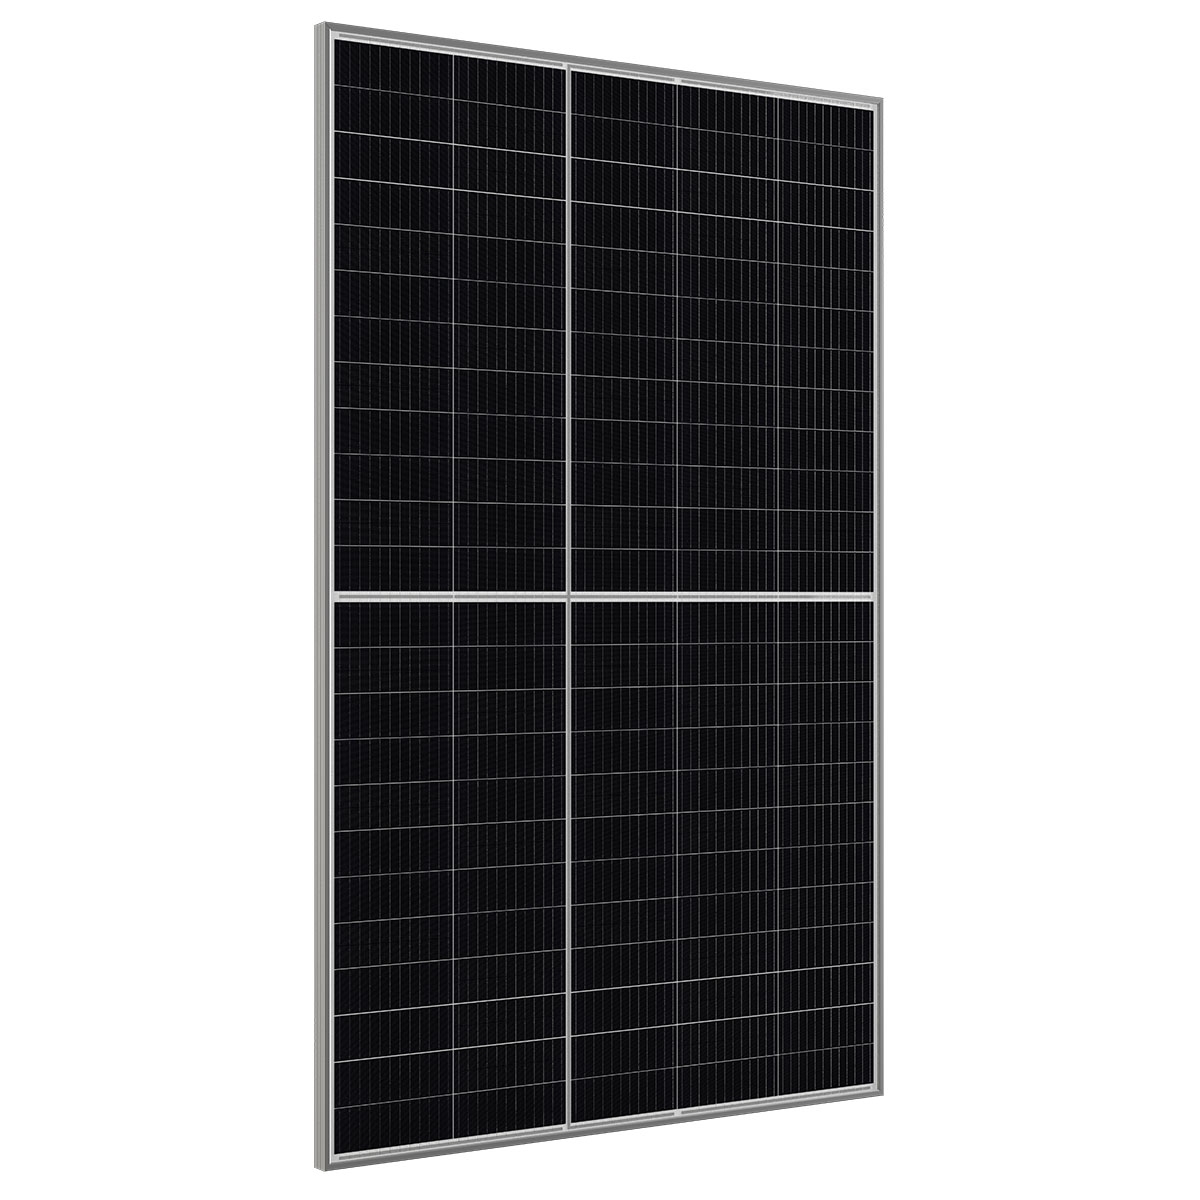 CW Enerji 385Wp M12 120PM Cells Half-Cut / F MB Solar Panel